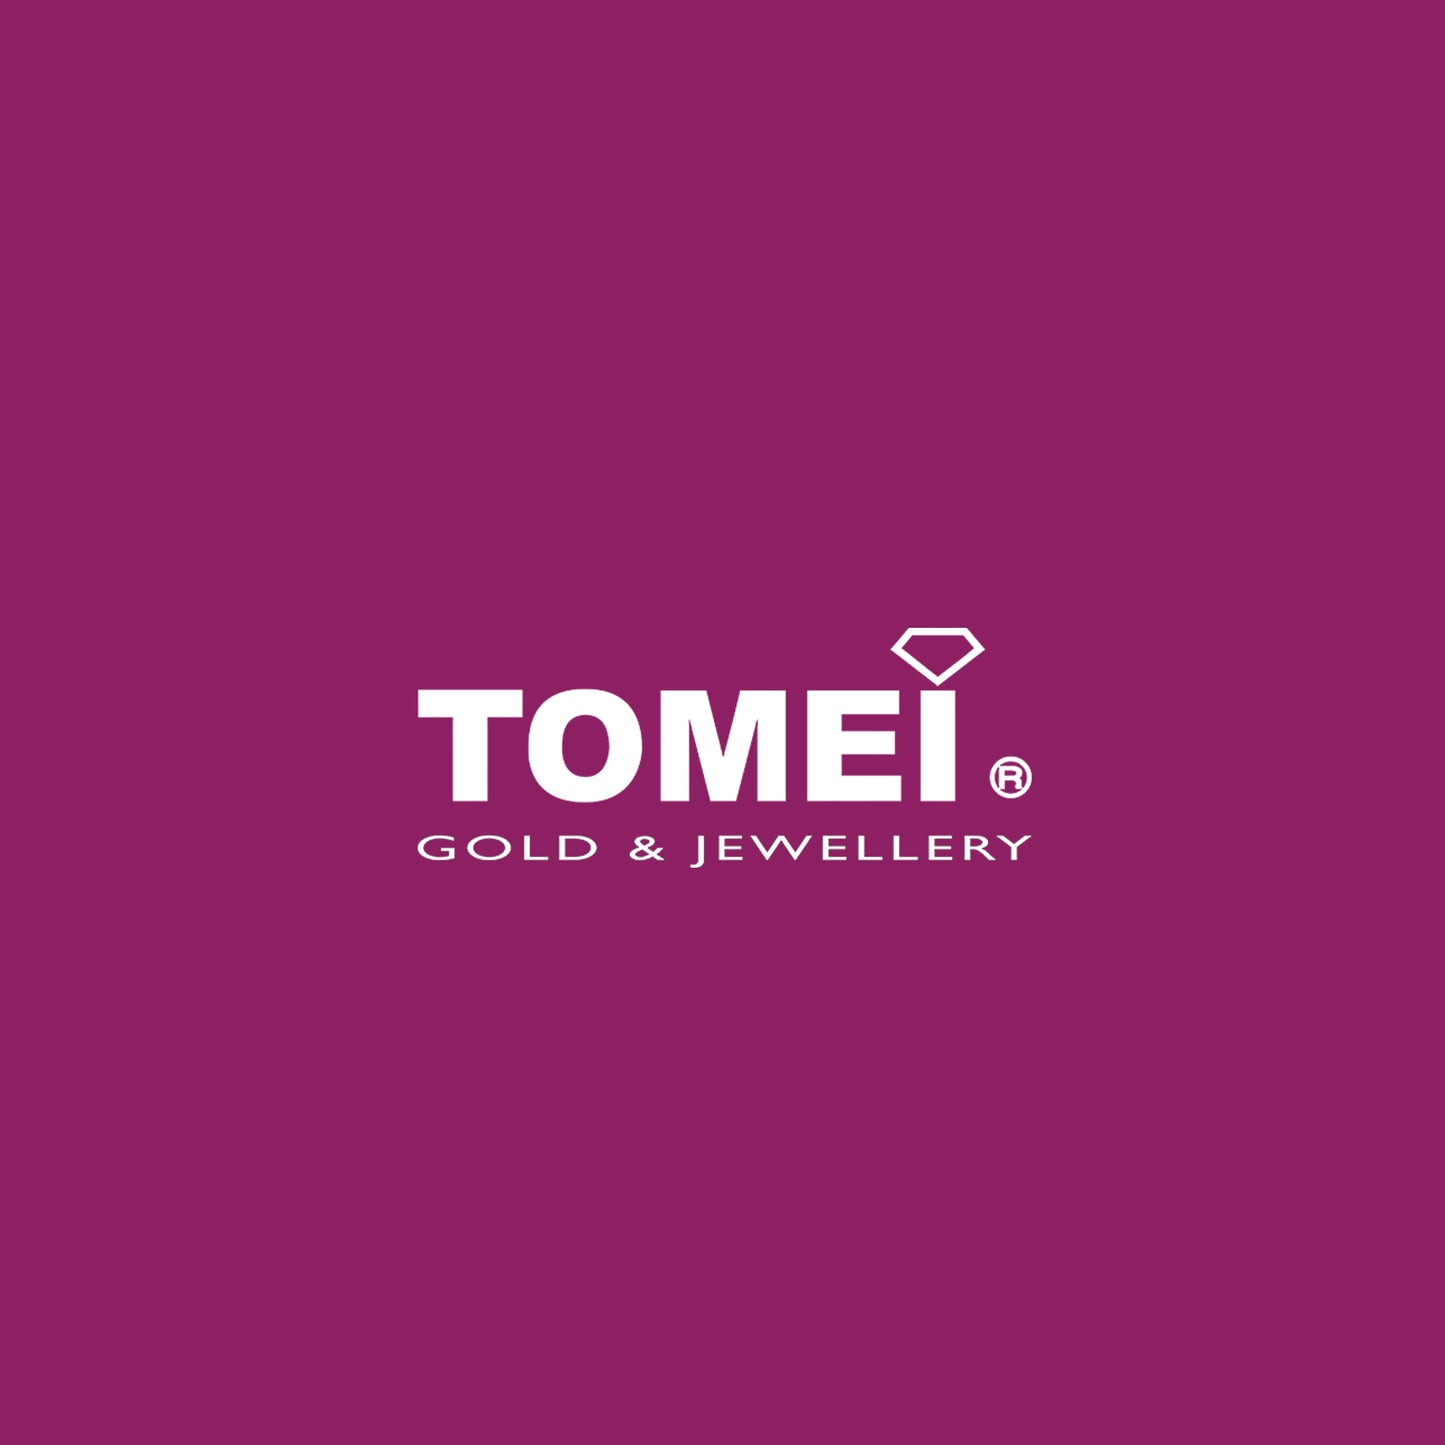 TOMEI Earrings, Yellow Gold 916 (9Q-YG1243E-1C)